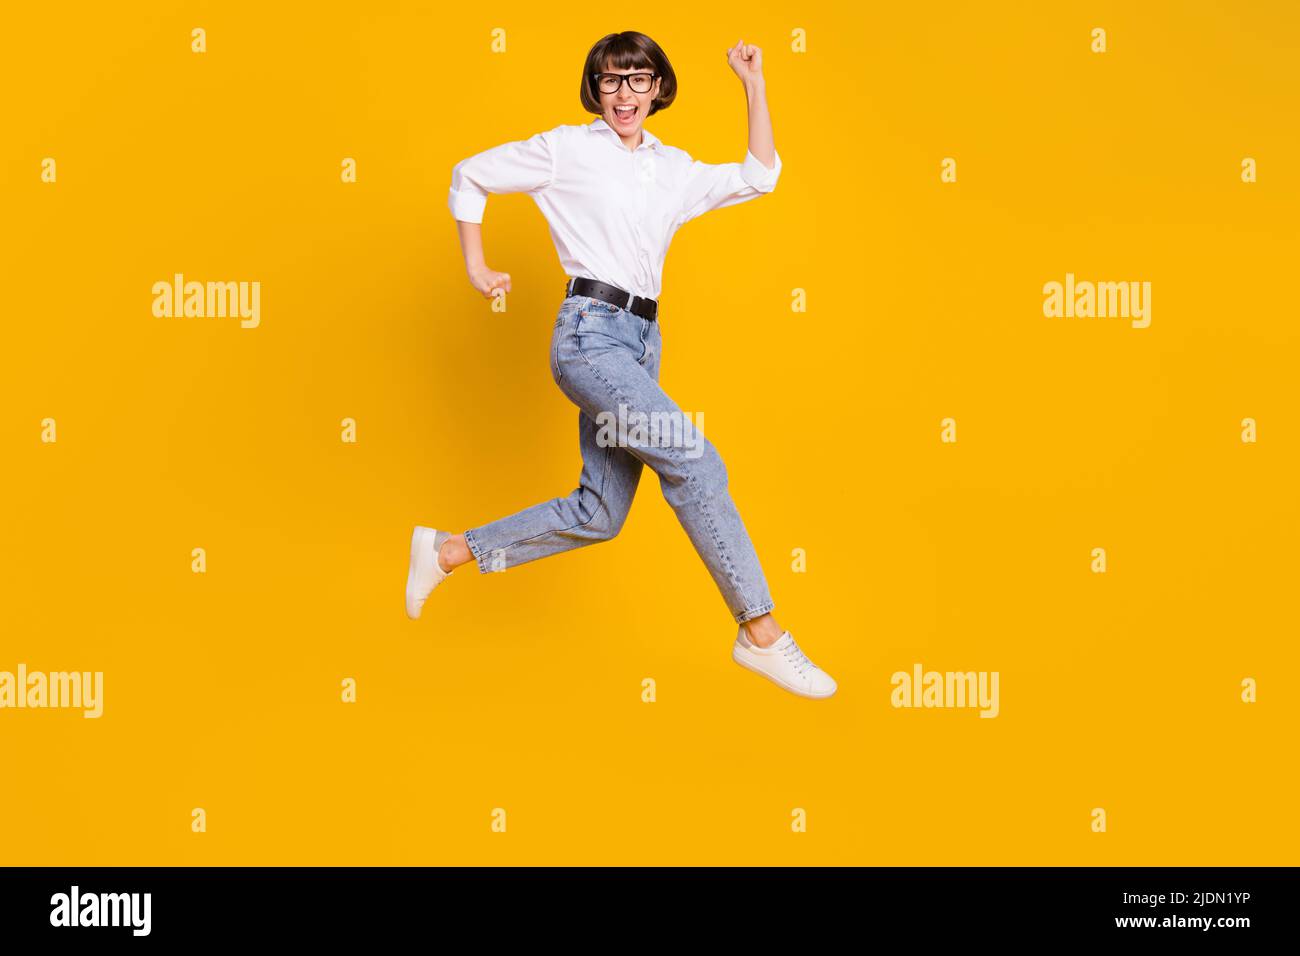 Foto von positiven Glück lustige Dame jump run tragen Brille weißes Hemd  Jeans Schuhe isoliert gelbe Farbe Hintergrund Stockfotografie - Alamy